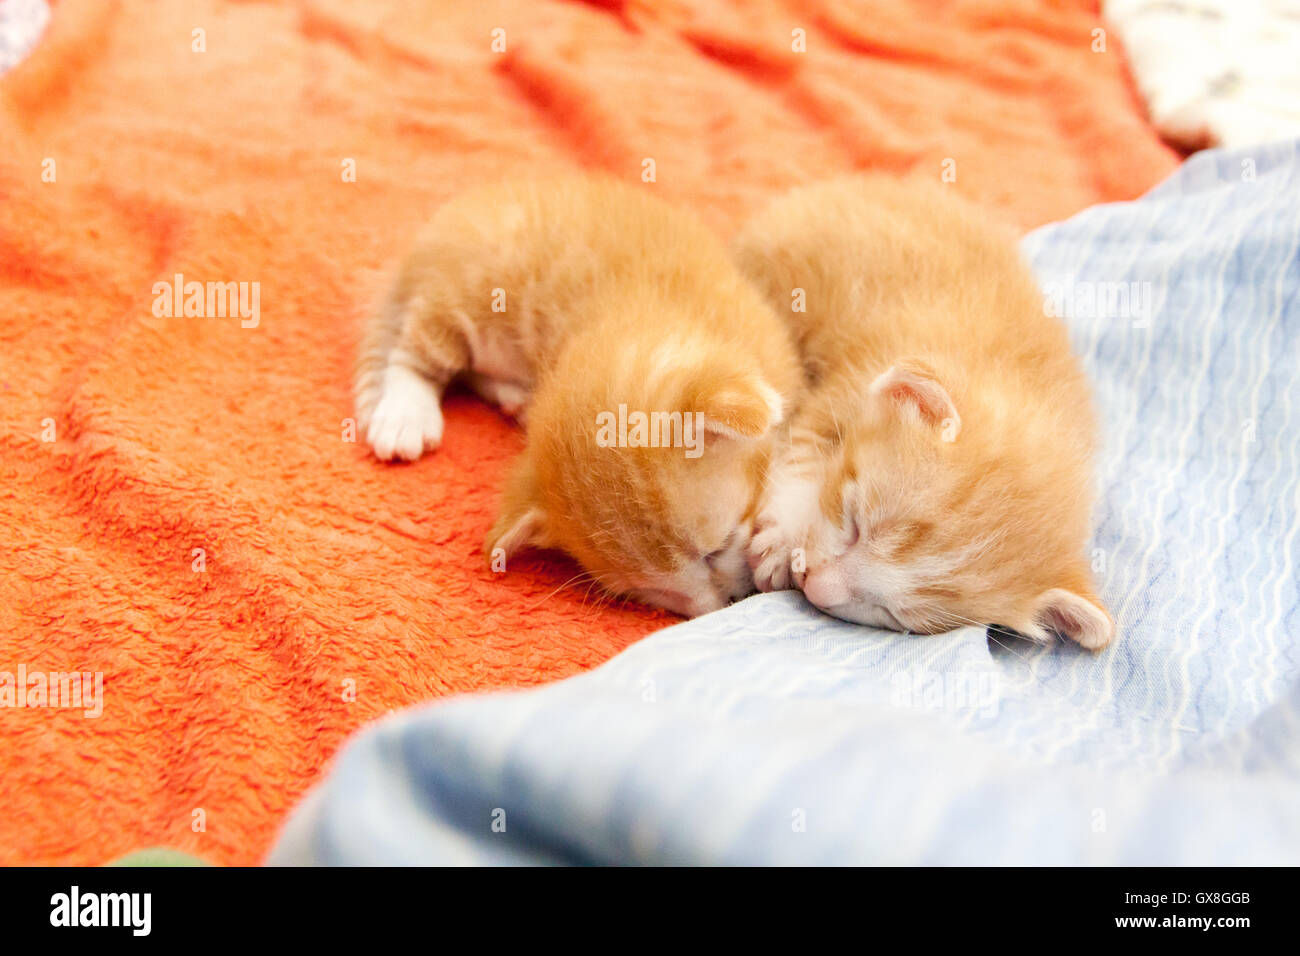 Mèo con cam đang ngủ là hình ảnh đáng yêu nhất mà bạn sẽ từng thấy. Hãy ngắm nhìn chú mèo con cam ngủ say đắm, với bộ lông lùn nhìn rất đáng yêu, chắc chắn sẽ khiến bạn thấy bầu không khí nhẹ nhàng và dịu dàng.